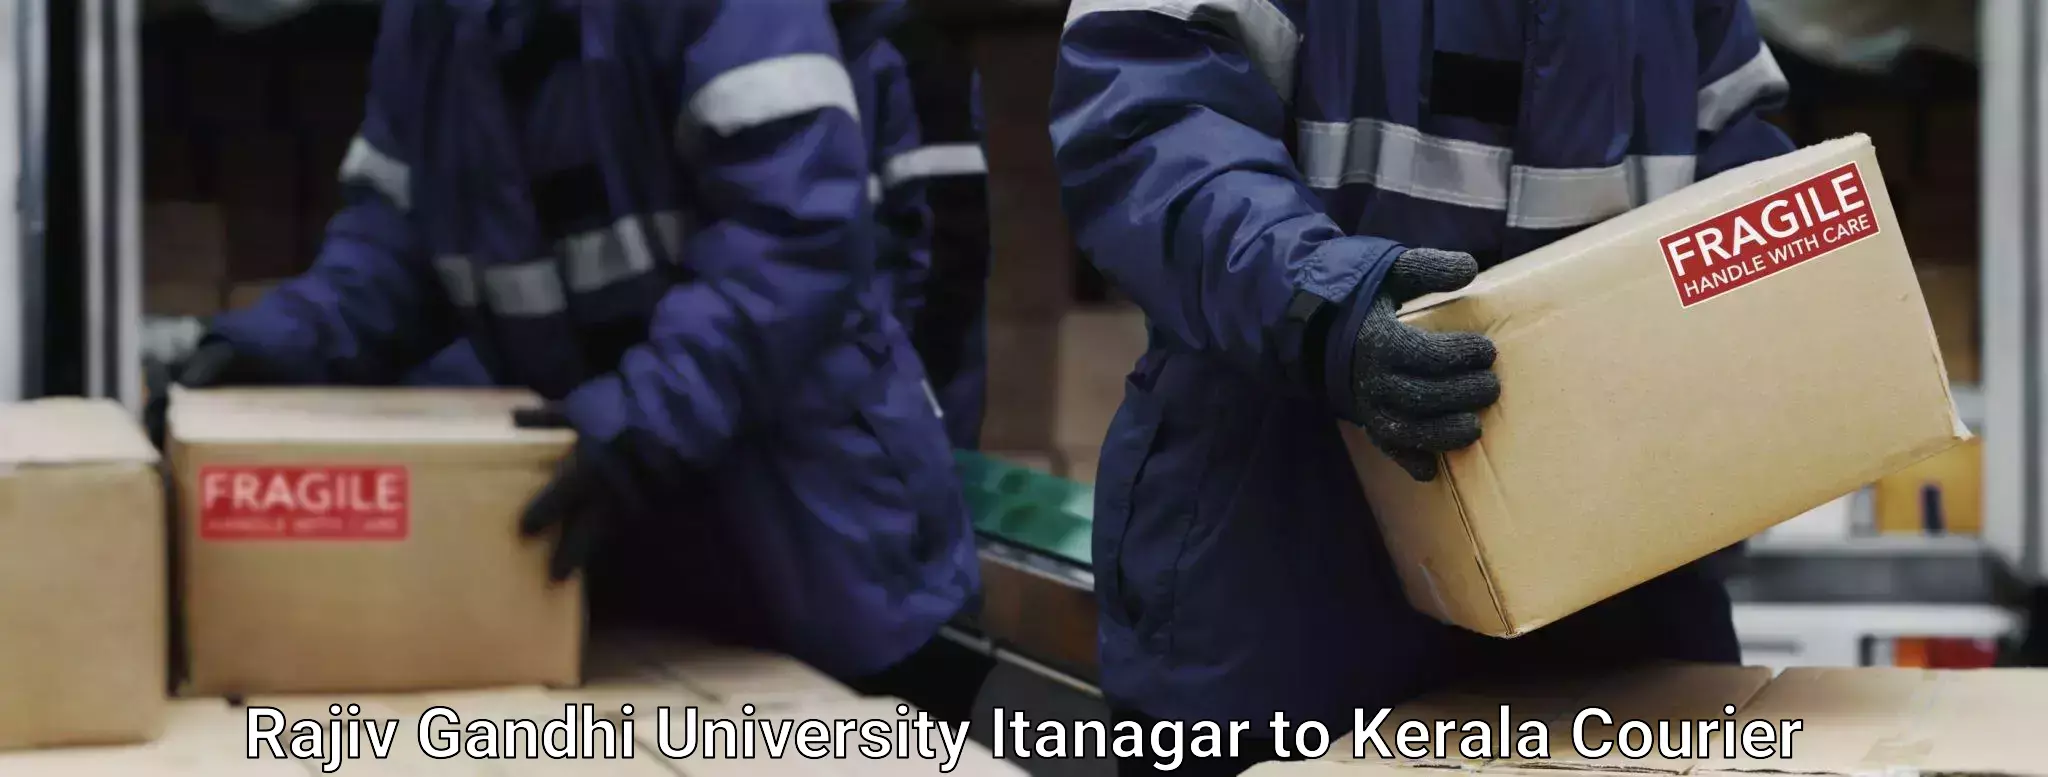 Baggage shipping experts in Rajiv Gandhi University Itanagar to Akaloor